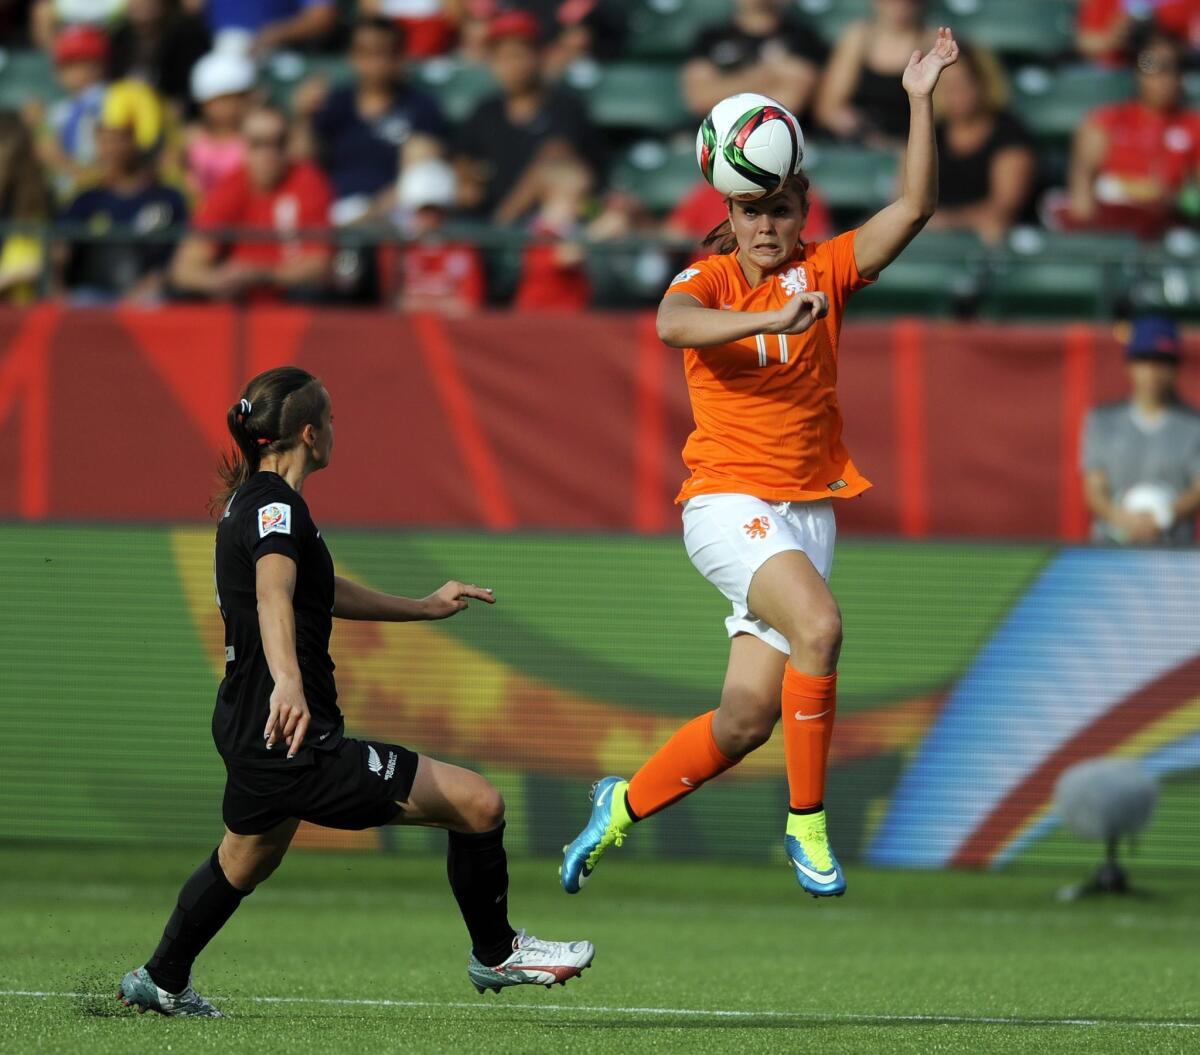 Netherlands' Lieke Martens heads the ball near New Zealand's Ria Percival during a 2015 Women's World Cup match.